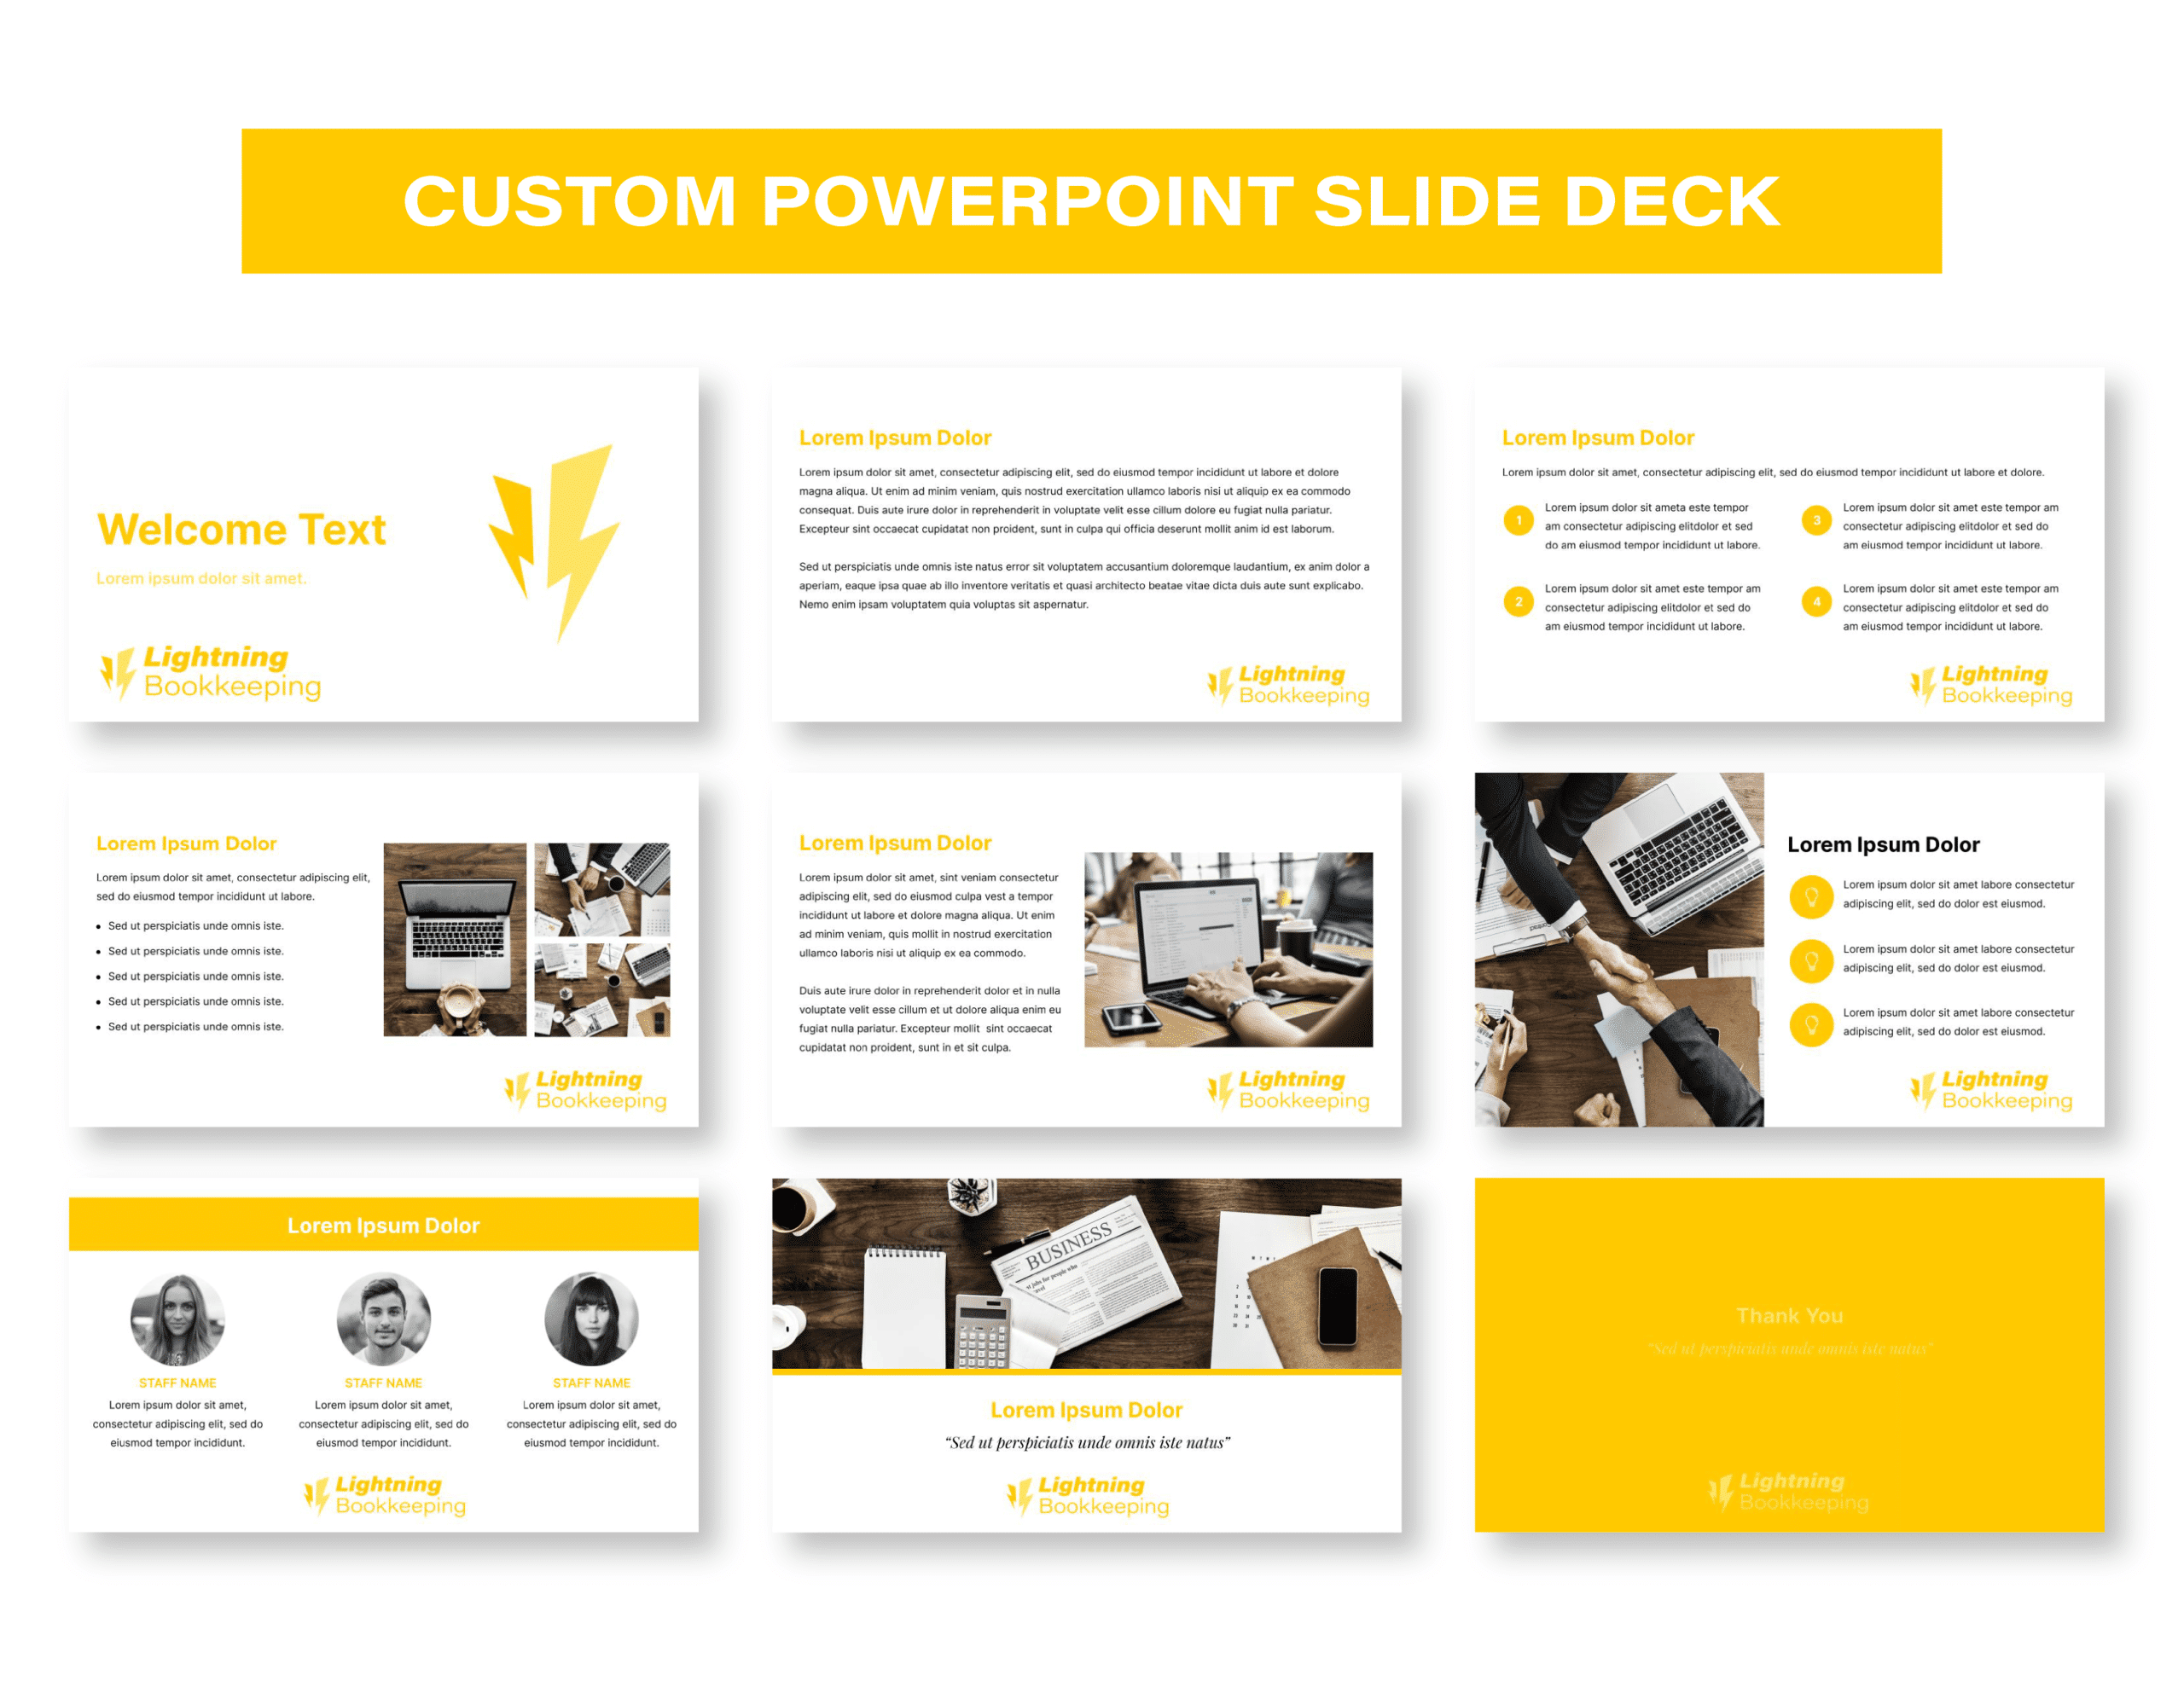 05LightningBK_Showcase_Custom PowerPoint Slide Deck